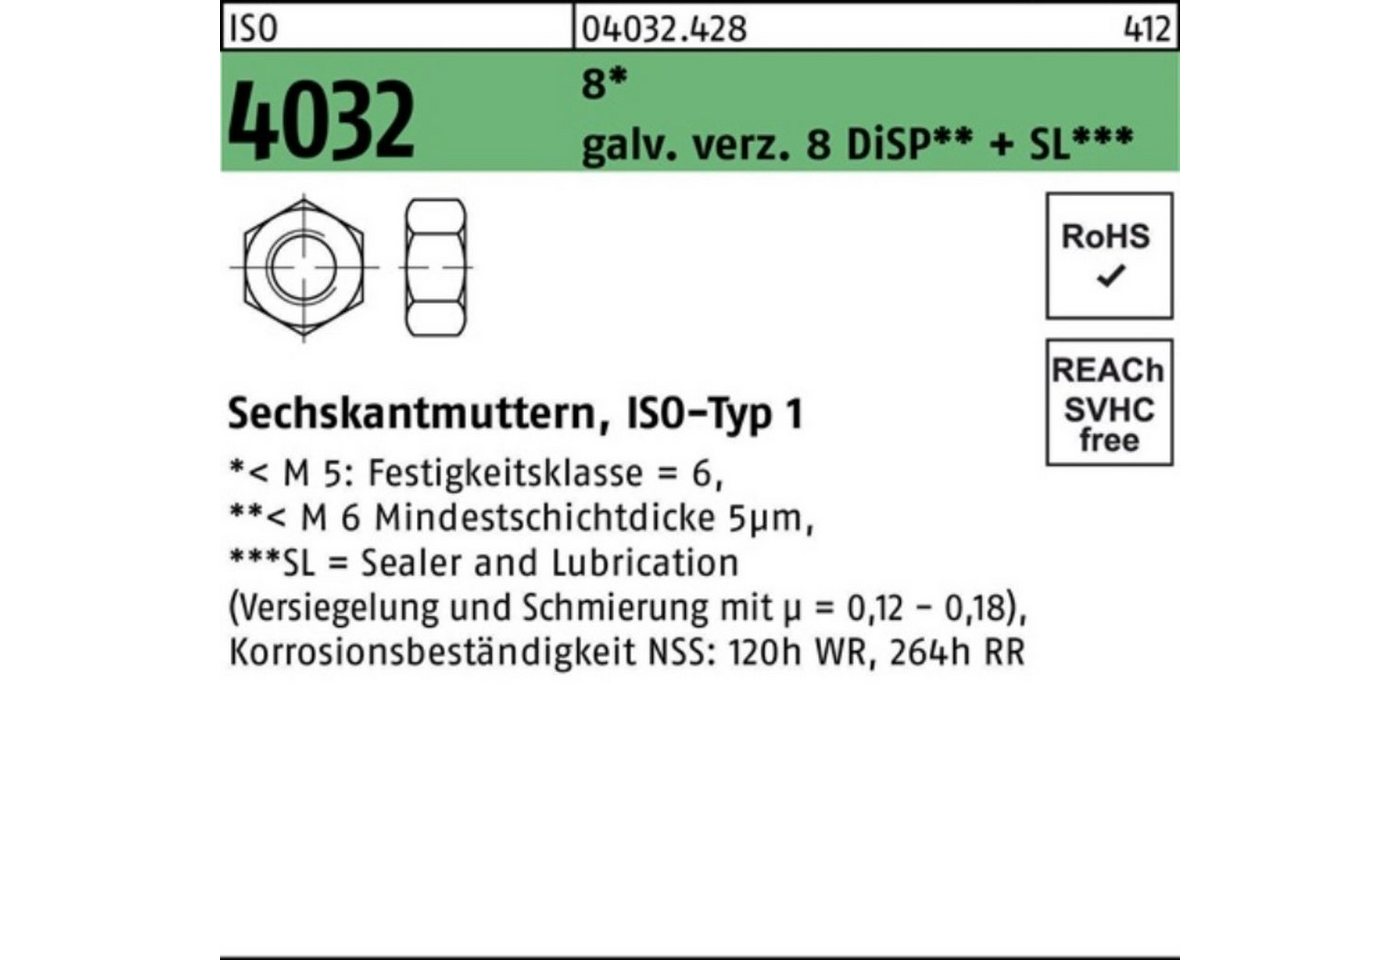 Bufab Muttern 1000er Pack Sechskantmutter ISO 4032 M4 8 galv.verz. 8 DiSP + SL 1000 von Bufab